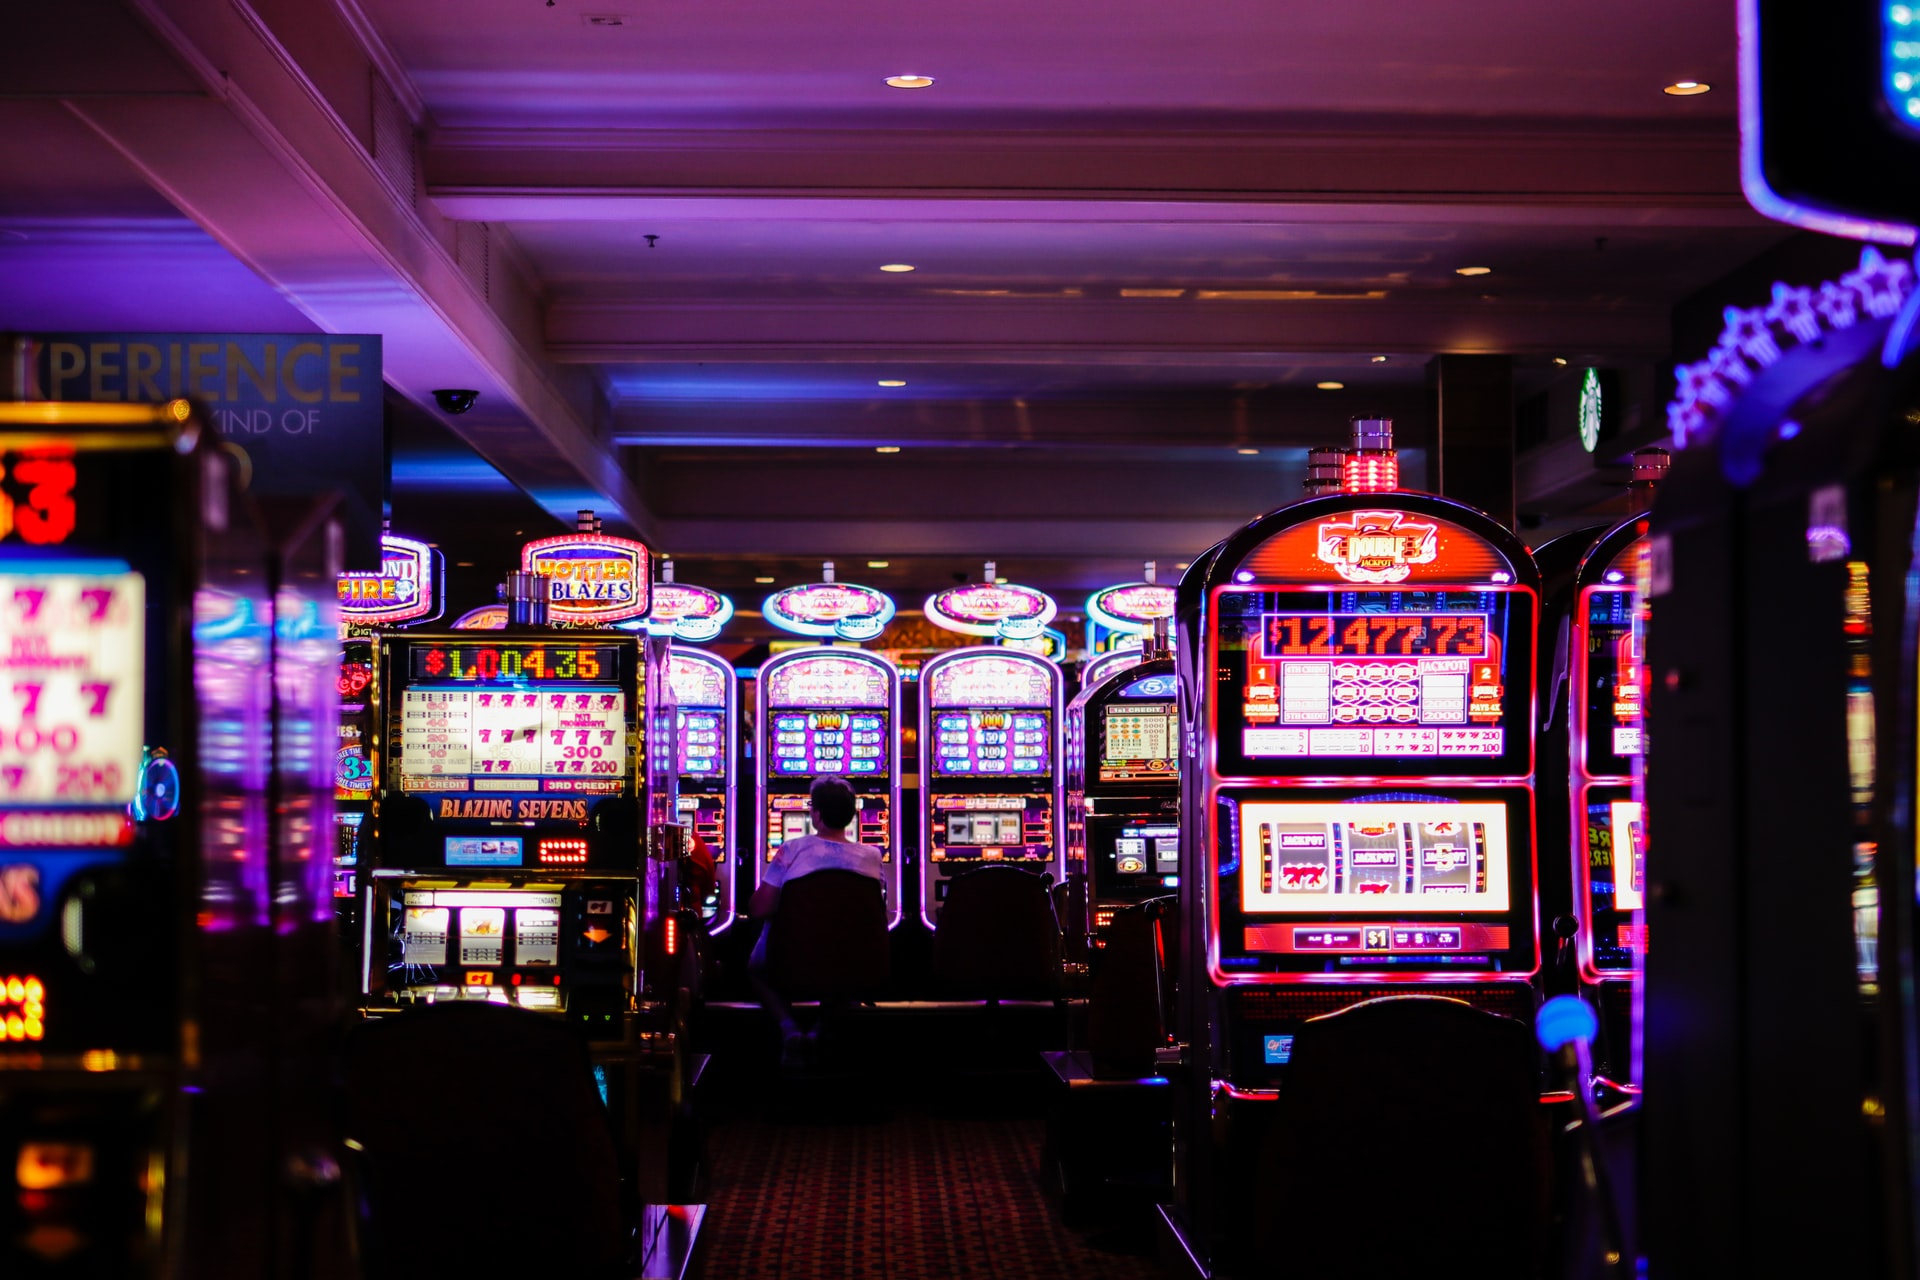 Startede du online casino med dansk licens for lidenskab eller penge?